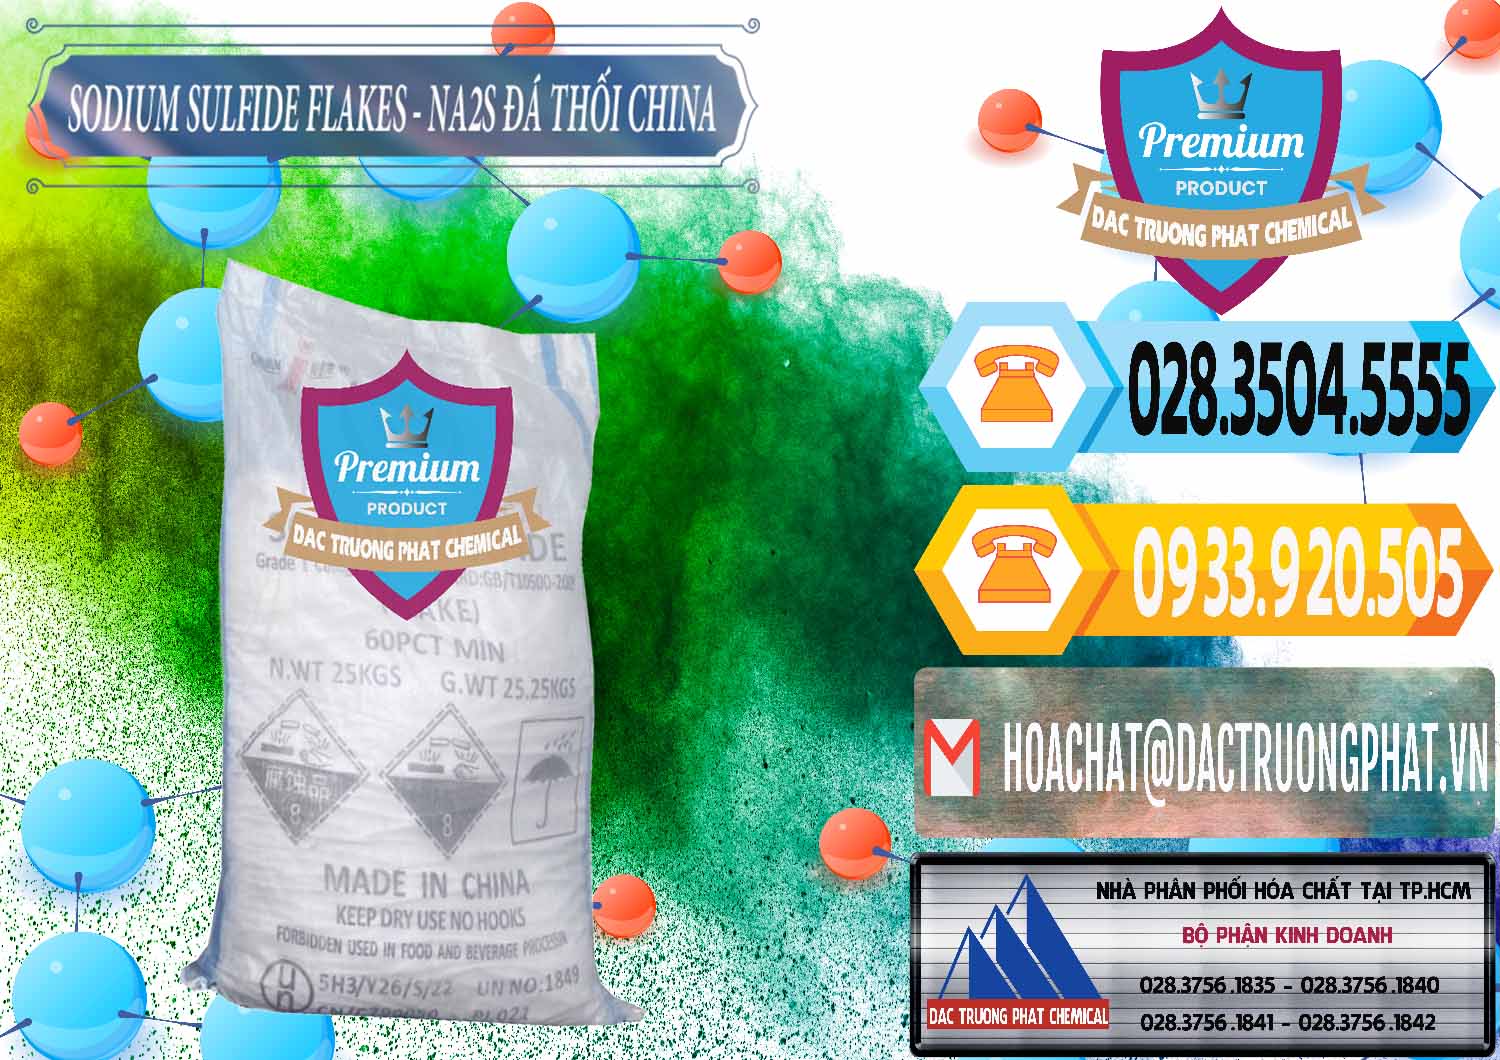 Chuyên bán và phân phối Sodium Sulfide NA2S – Đá Thối Liyuan Trung Quốc China - 0385 - Nơi chuyên phân phối và bán hóa chất tại TP.HCM - hoachattayrua.net